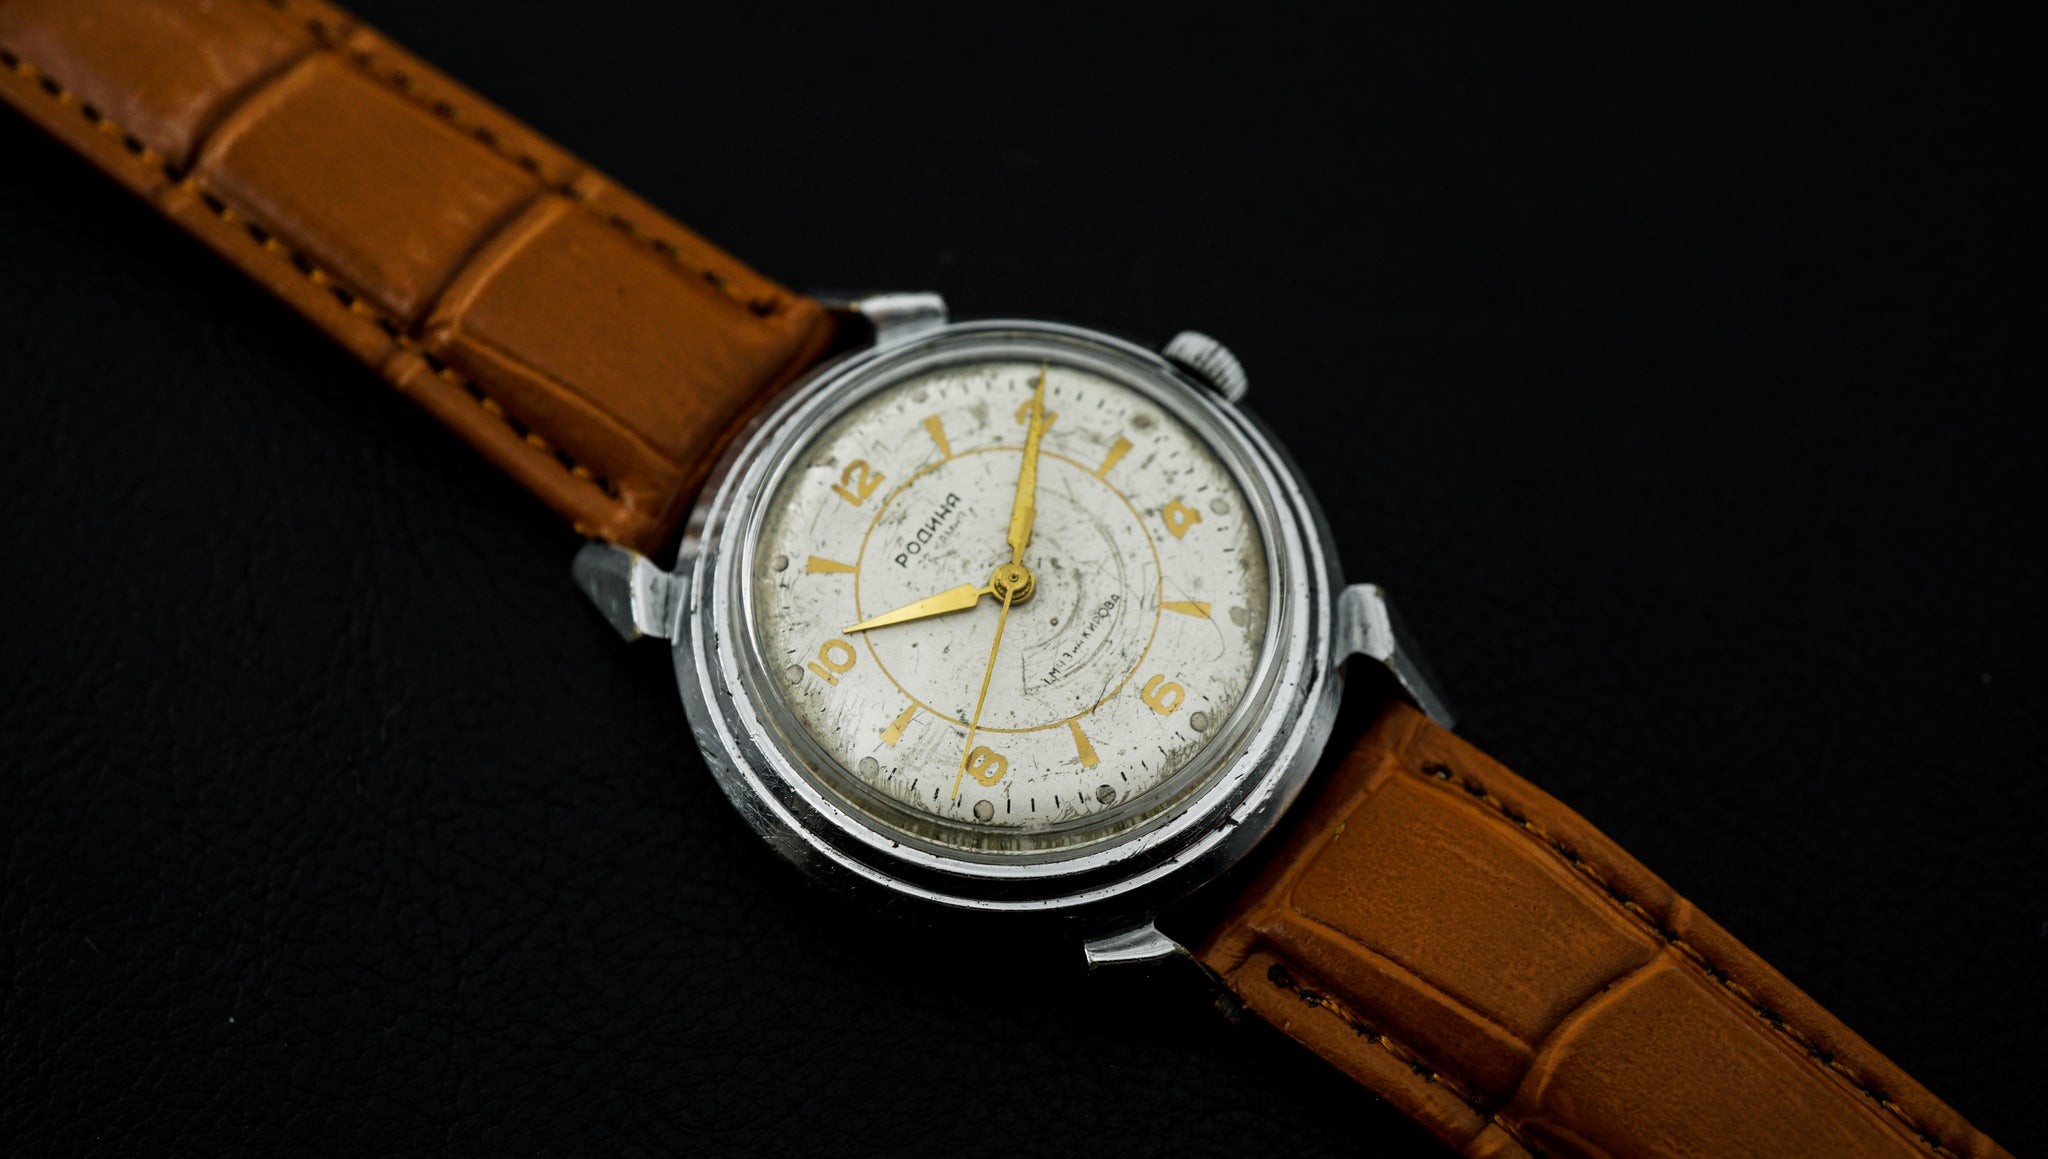 Rodina R005 Bauhaus Watch, Luxury, Watches on Carousell